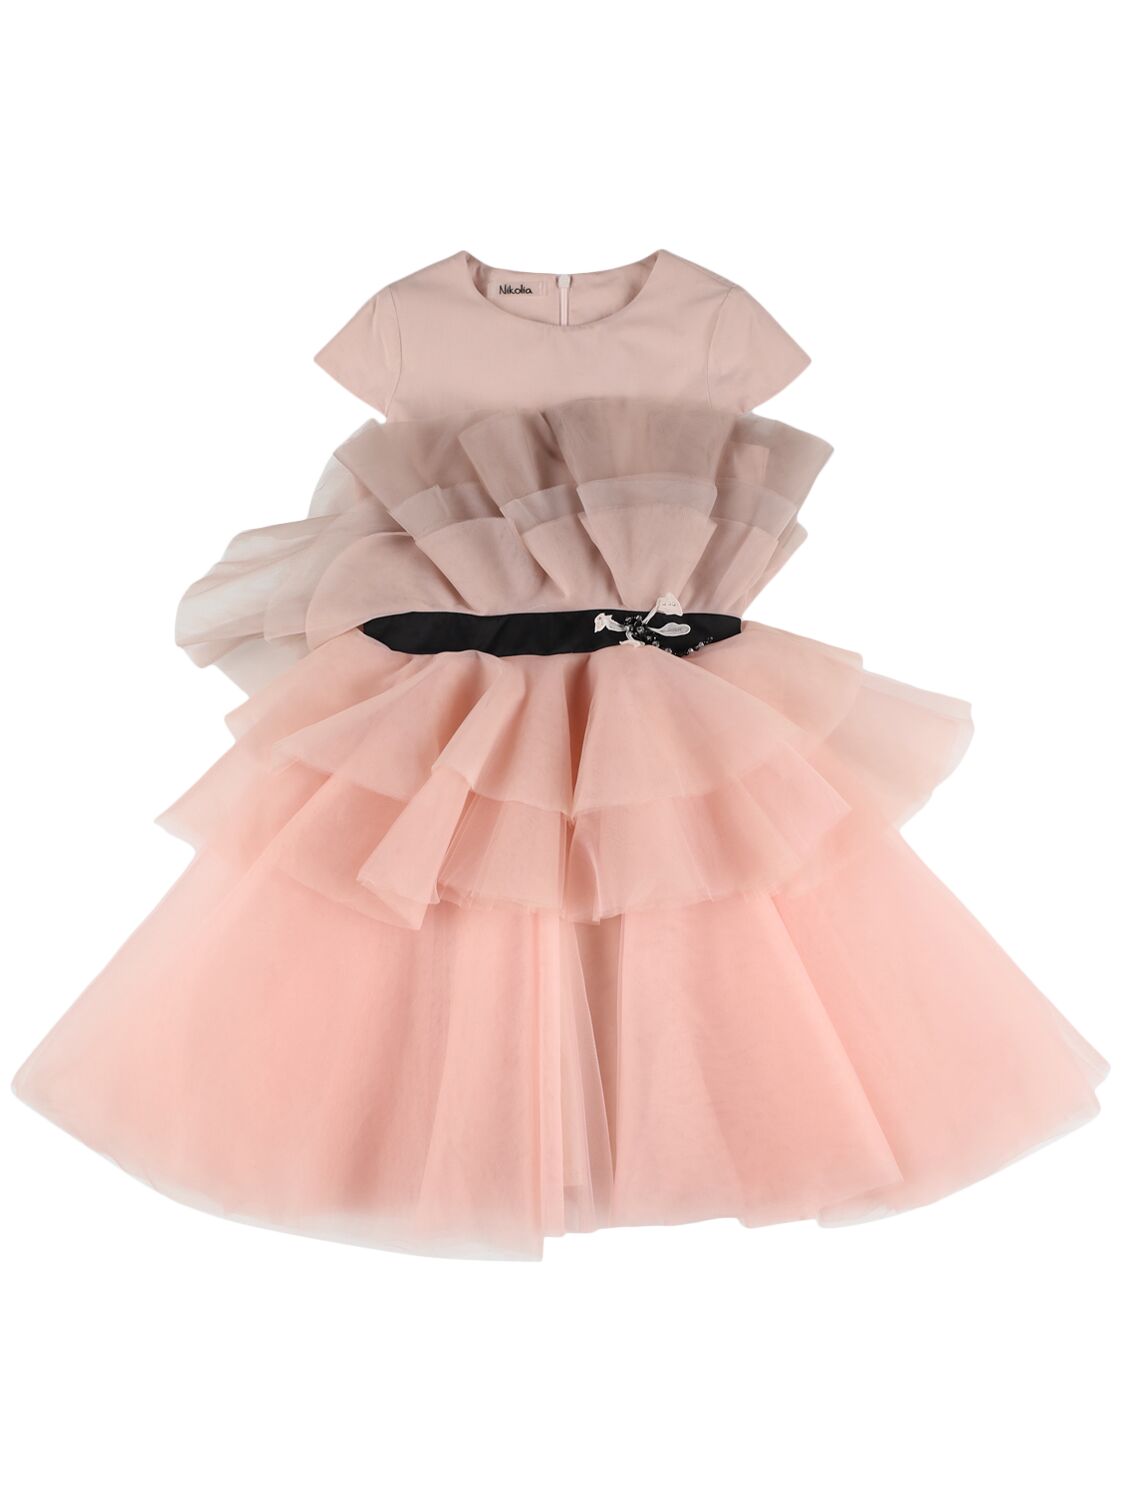 Nikolia Kids' Tulle Dress W/ Butterfly Appliqué In Pink